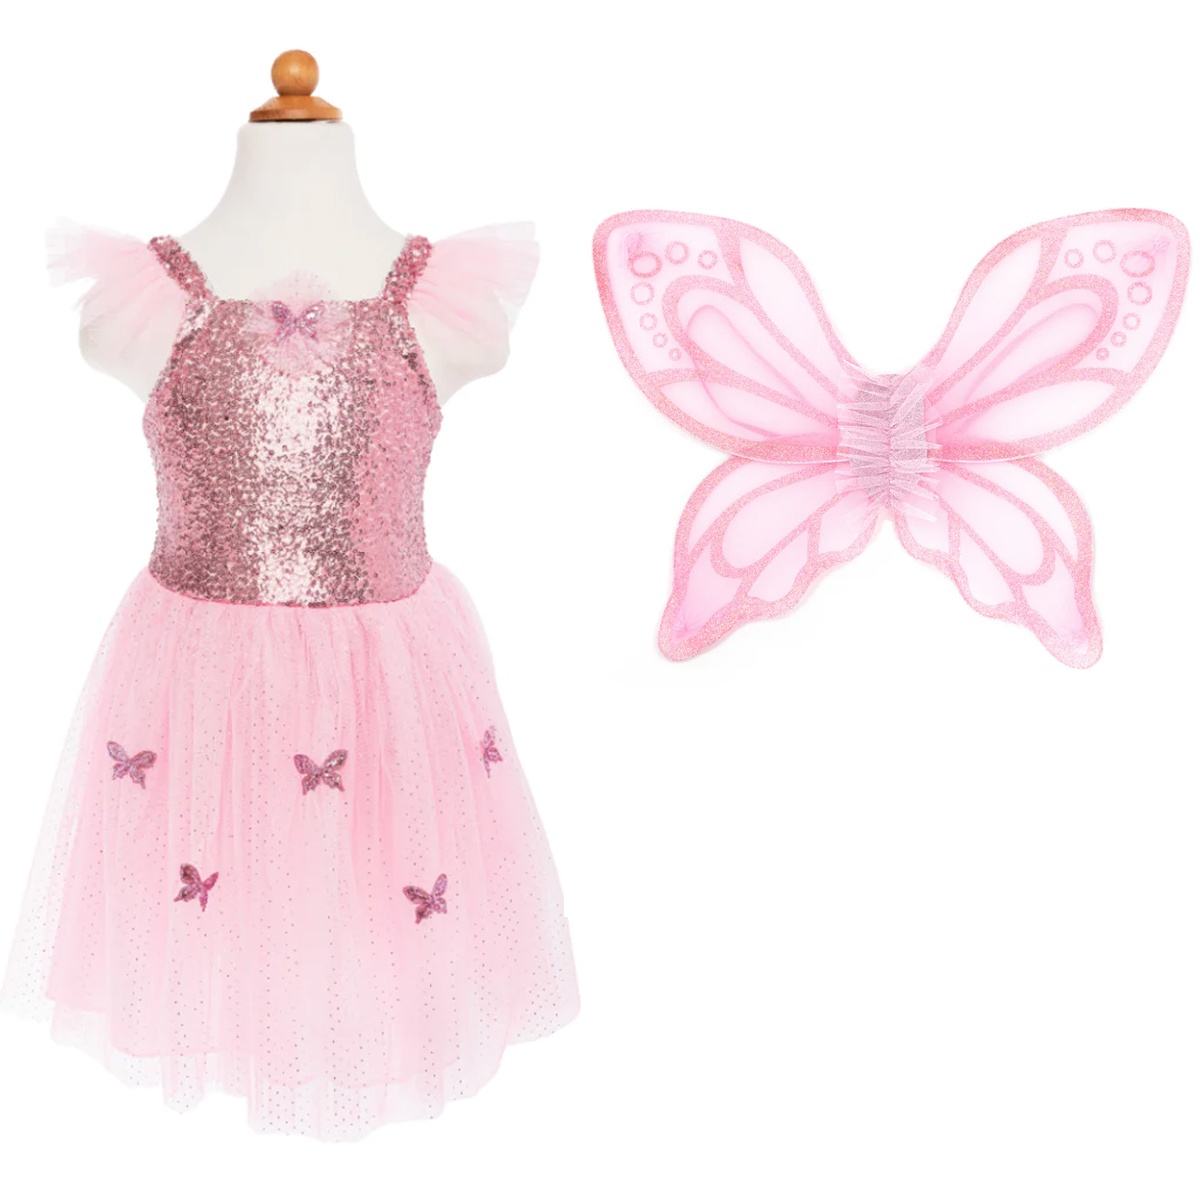 Kinderkostüm Schmetterling Kleid Pink Size 5-7 110 - 122